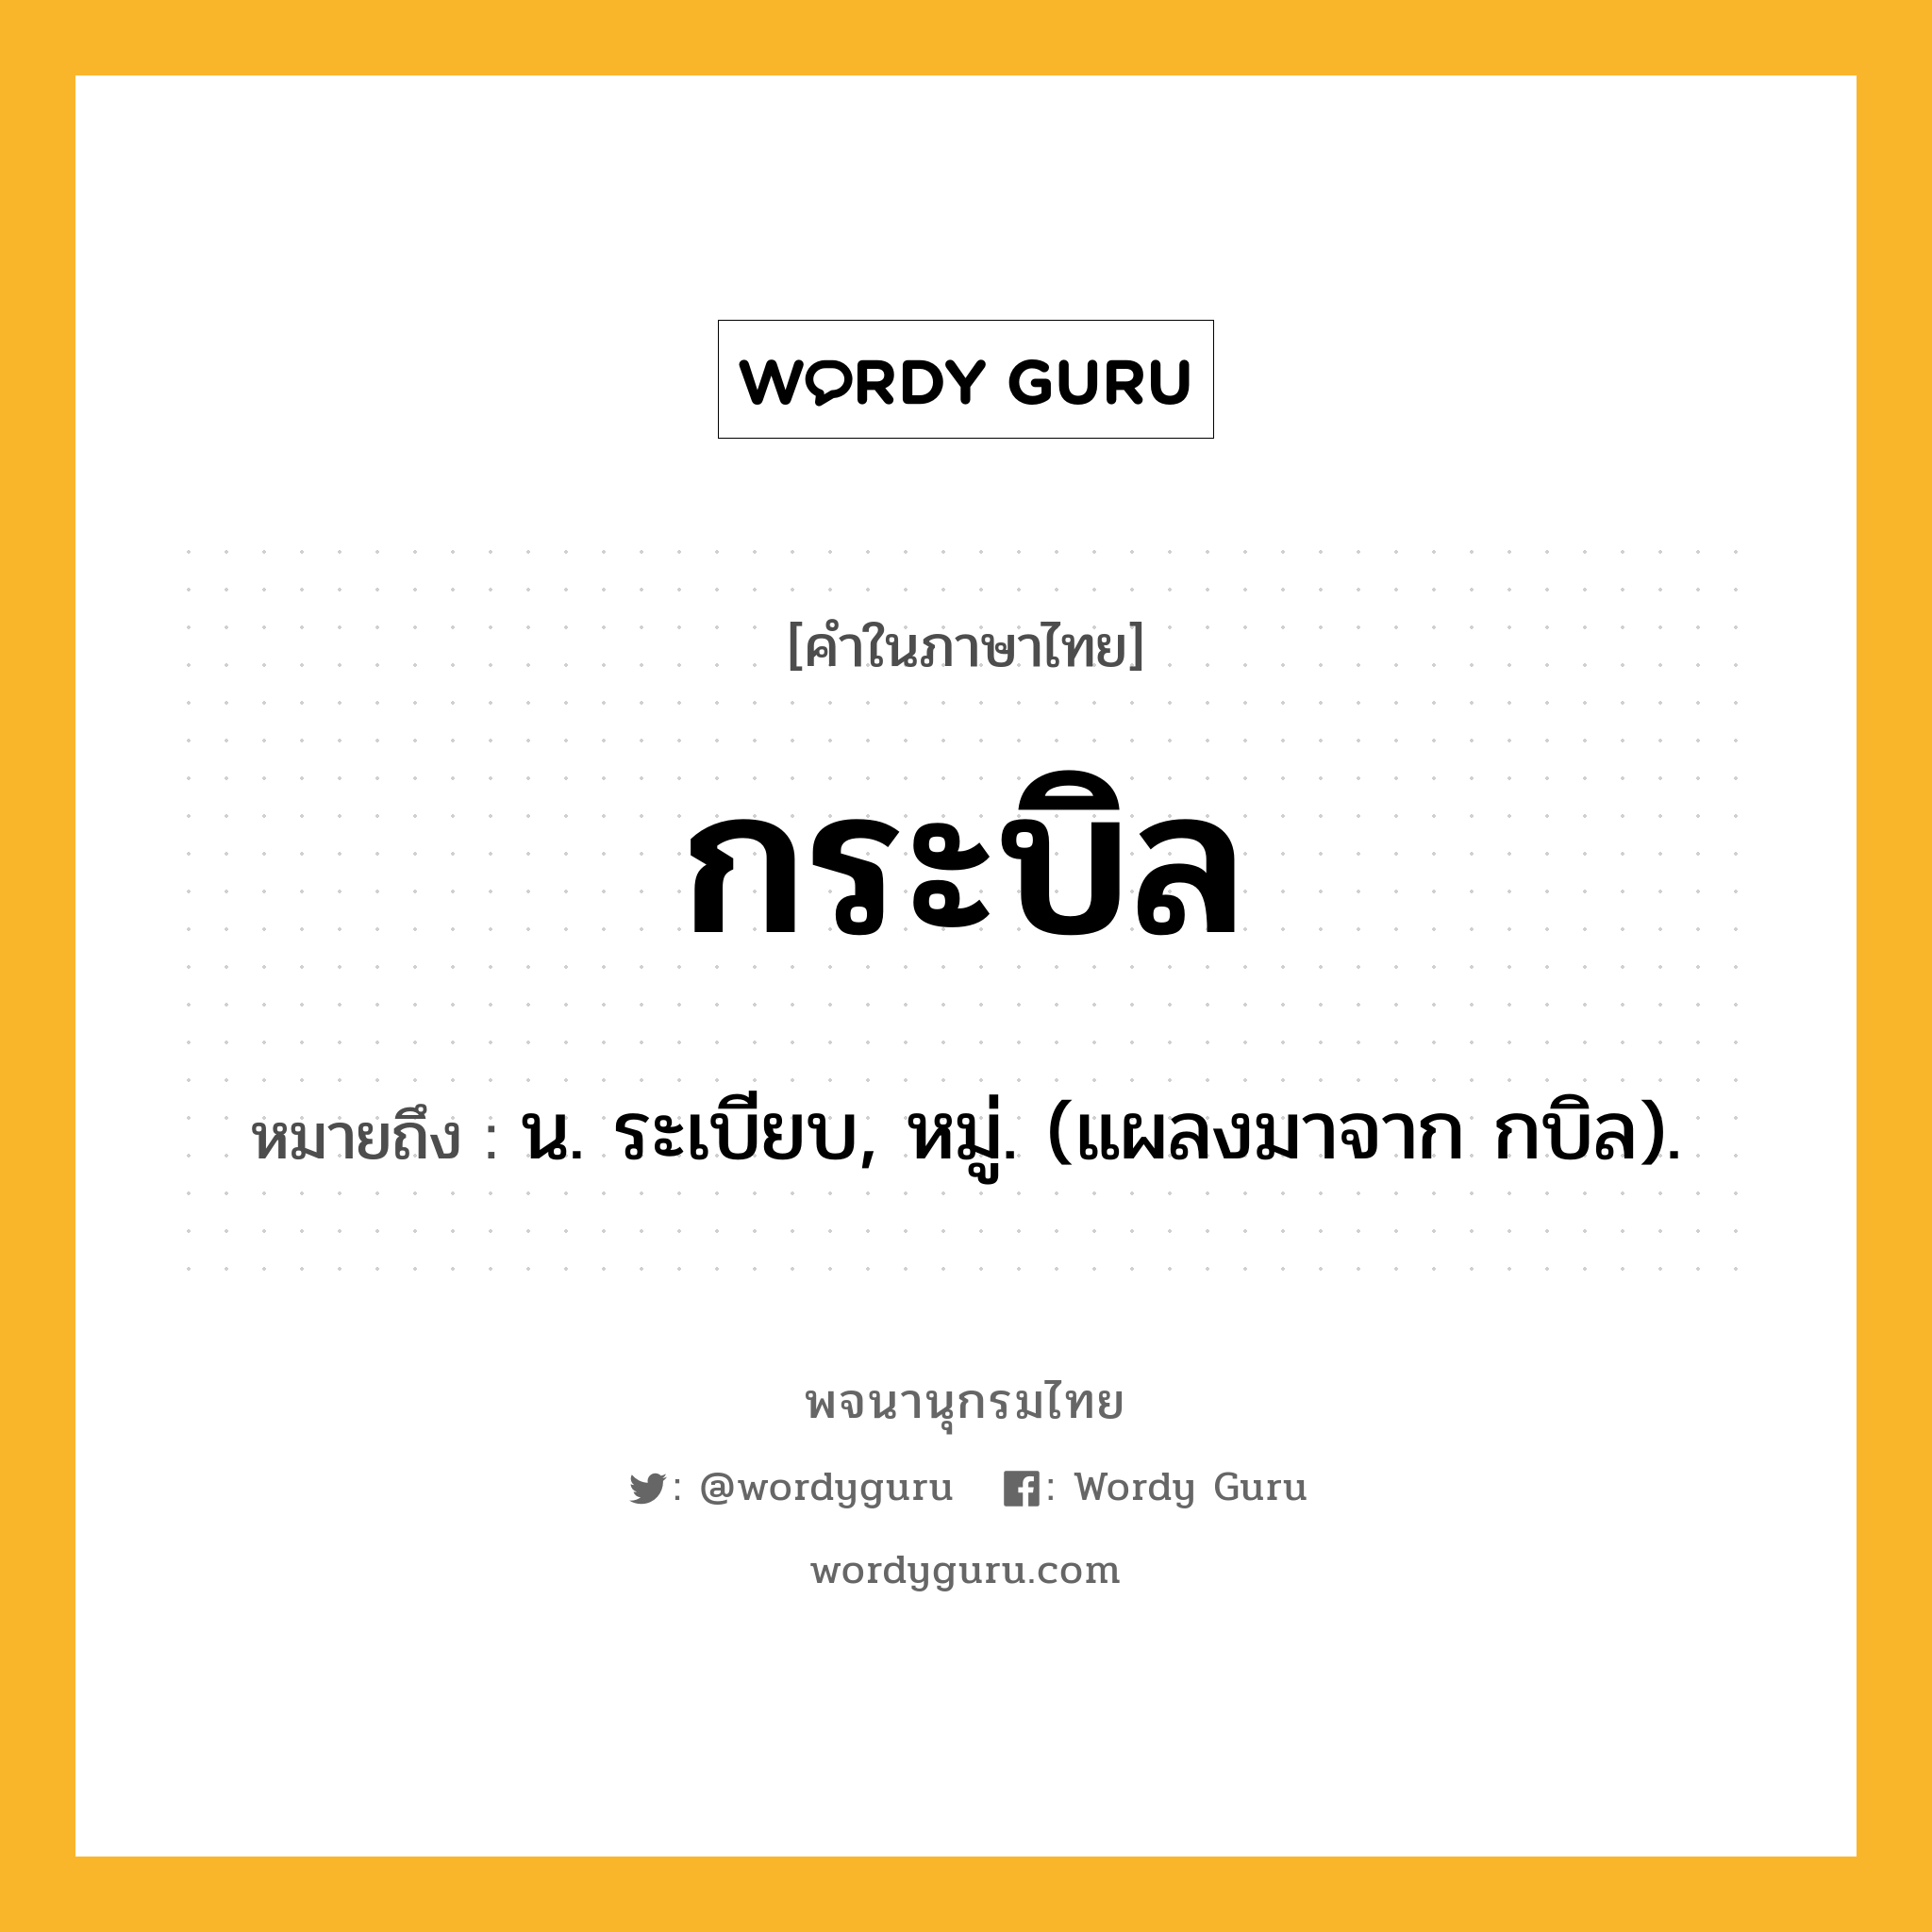 กระบิล ความหมาย หมายถึงอะไร?, คำในภาษาไทย กระบิล หมายถึง น. ระเบียบ, หมู่. (แผลงมาจาก กบิล).